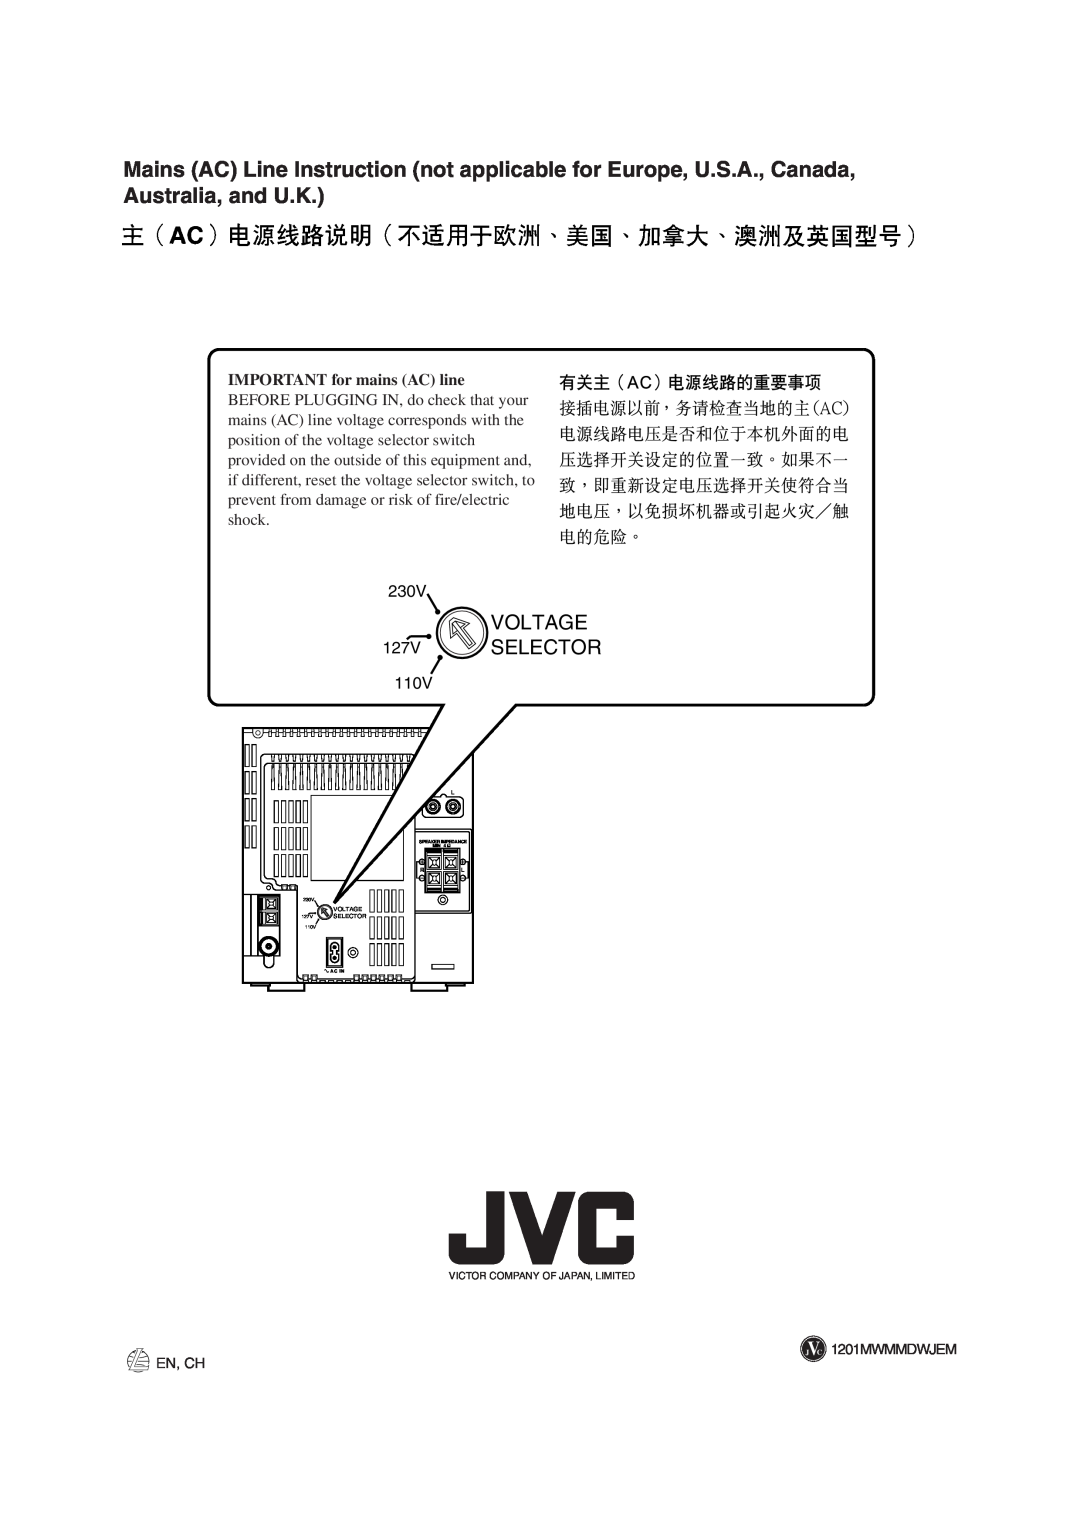 JVC UX-A52 manual En, Ch, 230V, Voltage, 127V, Selector, 110V, Speaker Impedance, Ac In, Victor Company Of Japan, Limited 